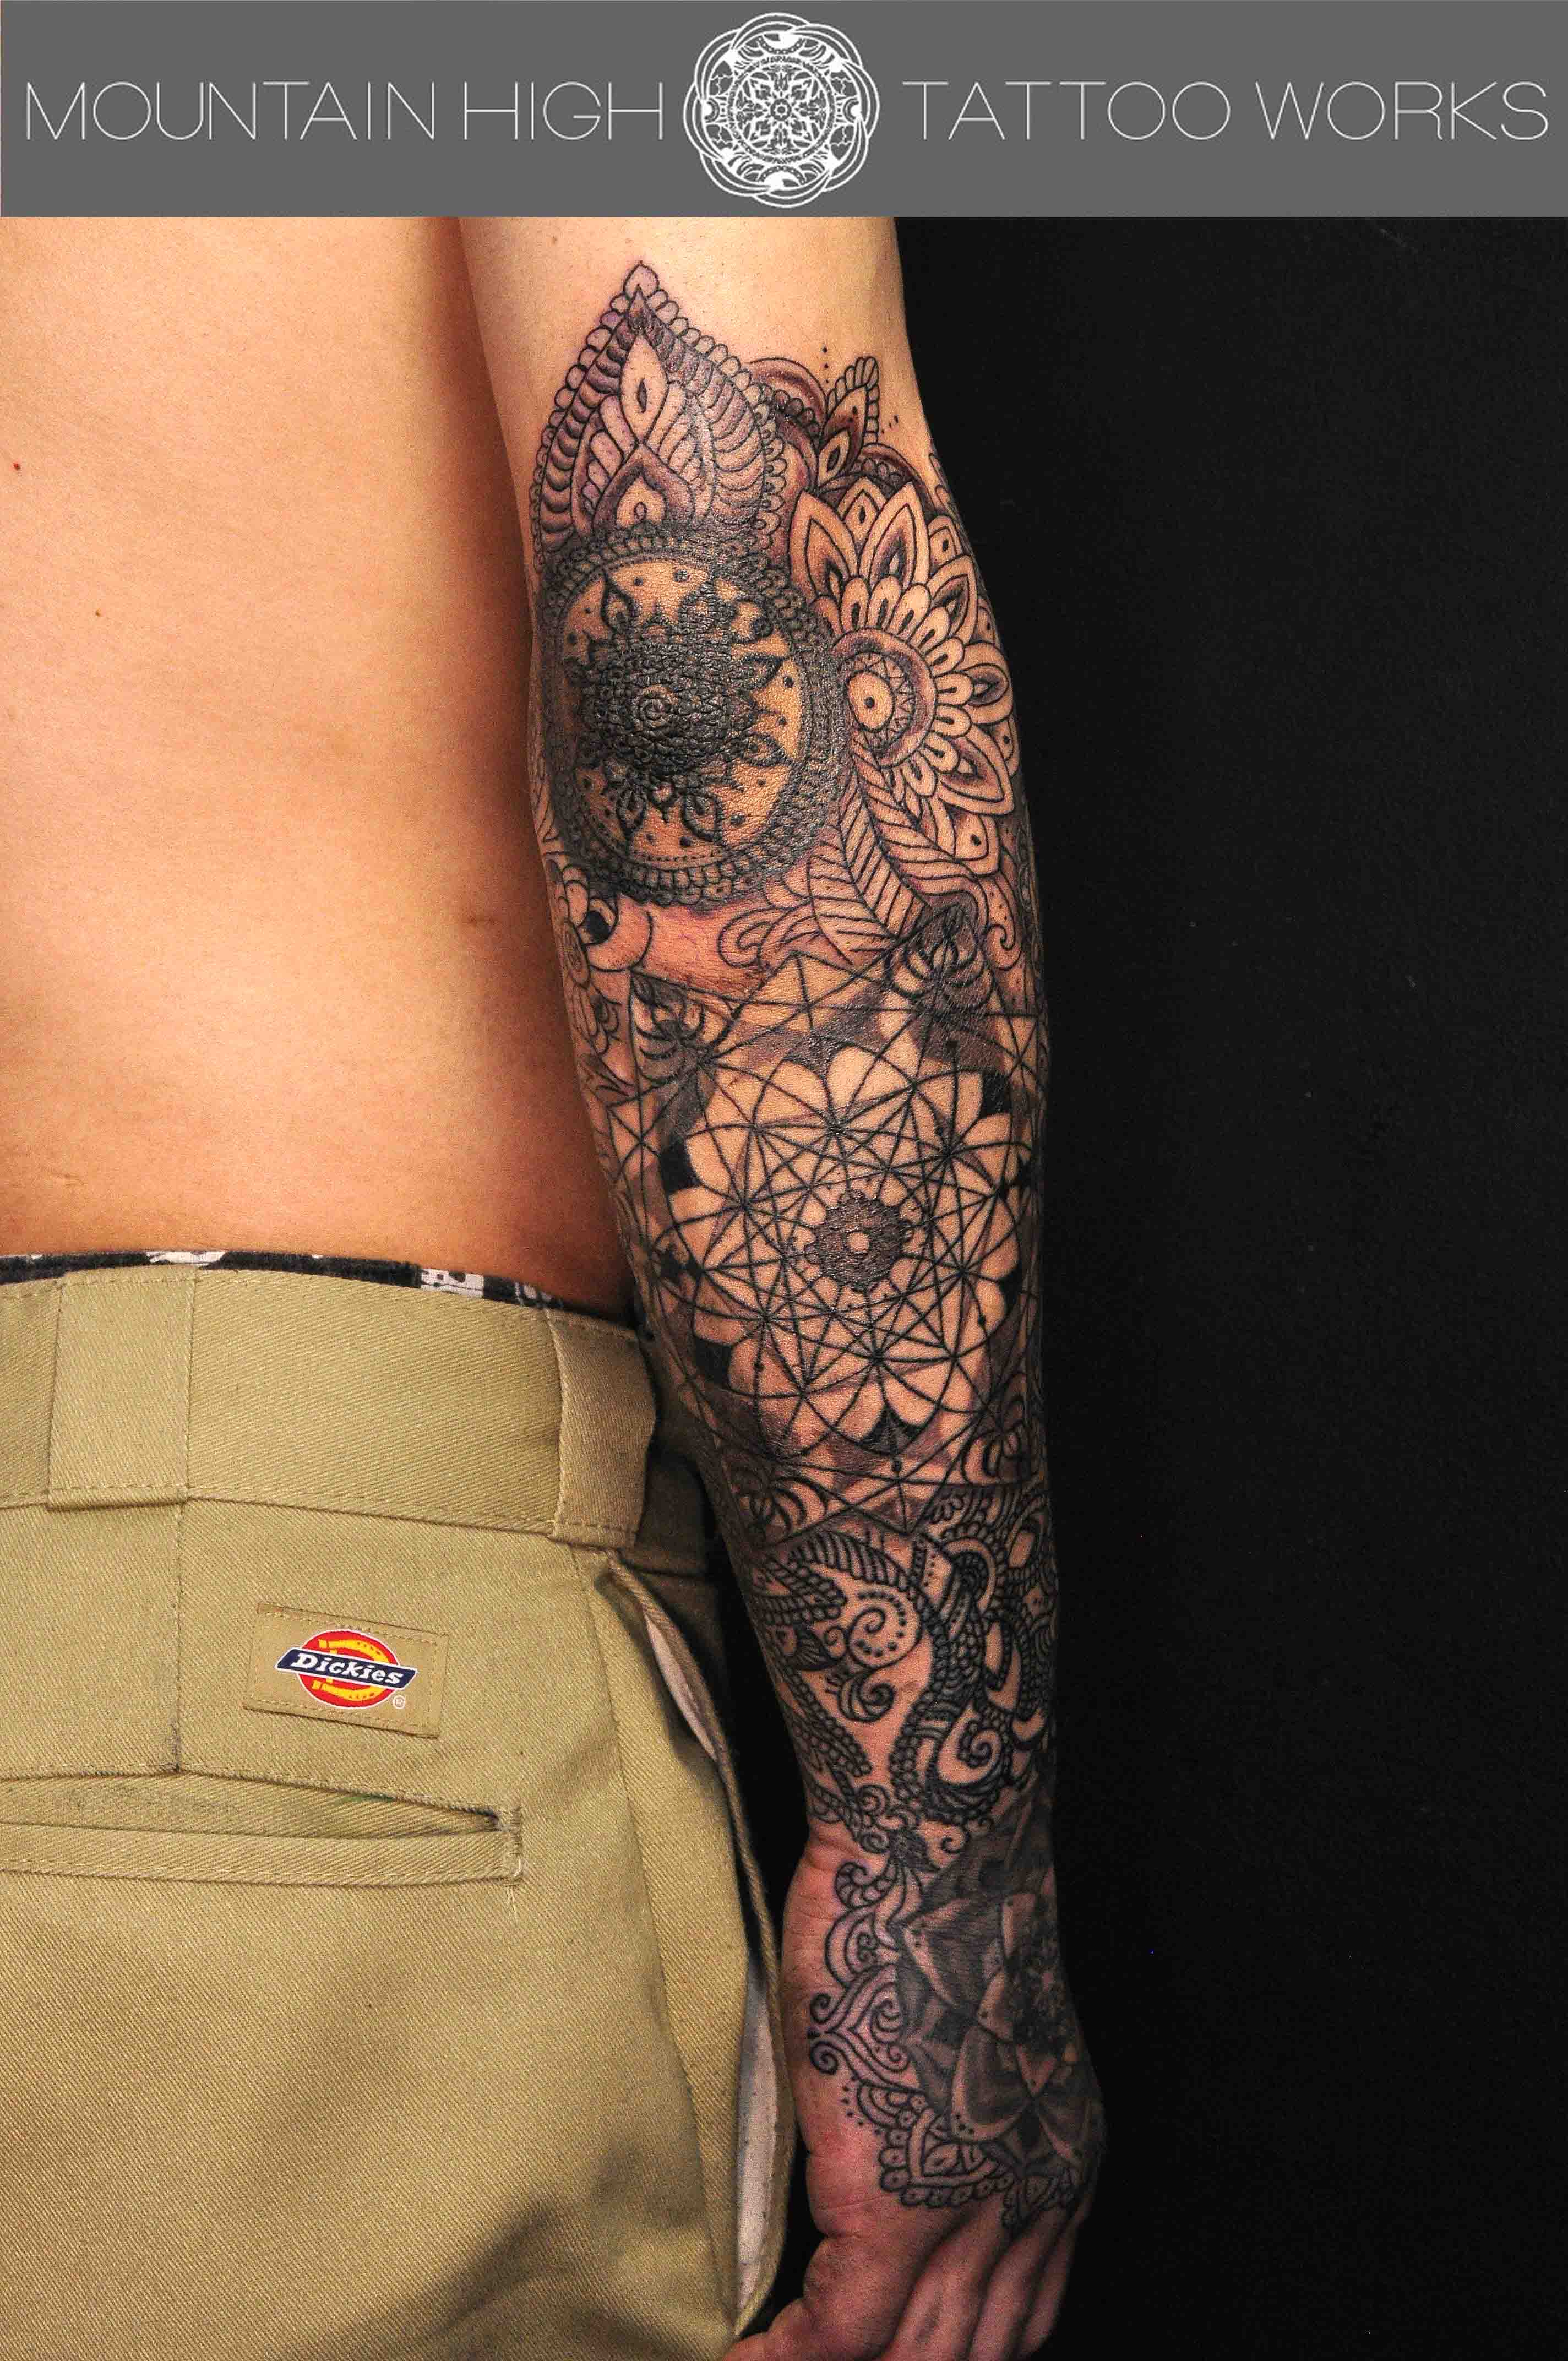 腕へのヘナ風 ジオメトリック トライバルタトゥー 札幌のタトゥースタジオ Mountain High Tattoo Works作品集